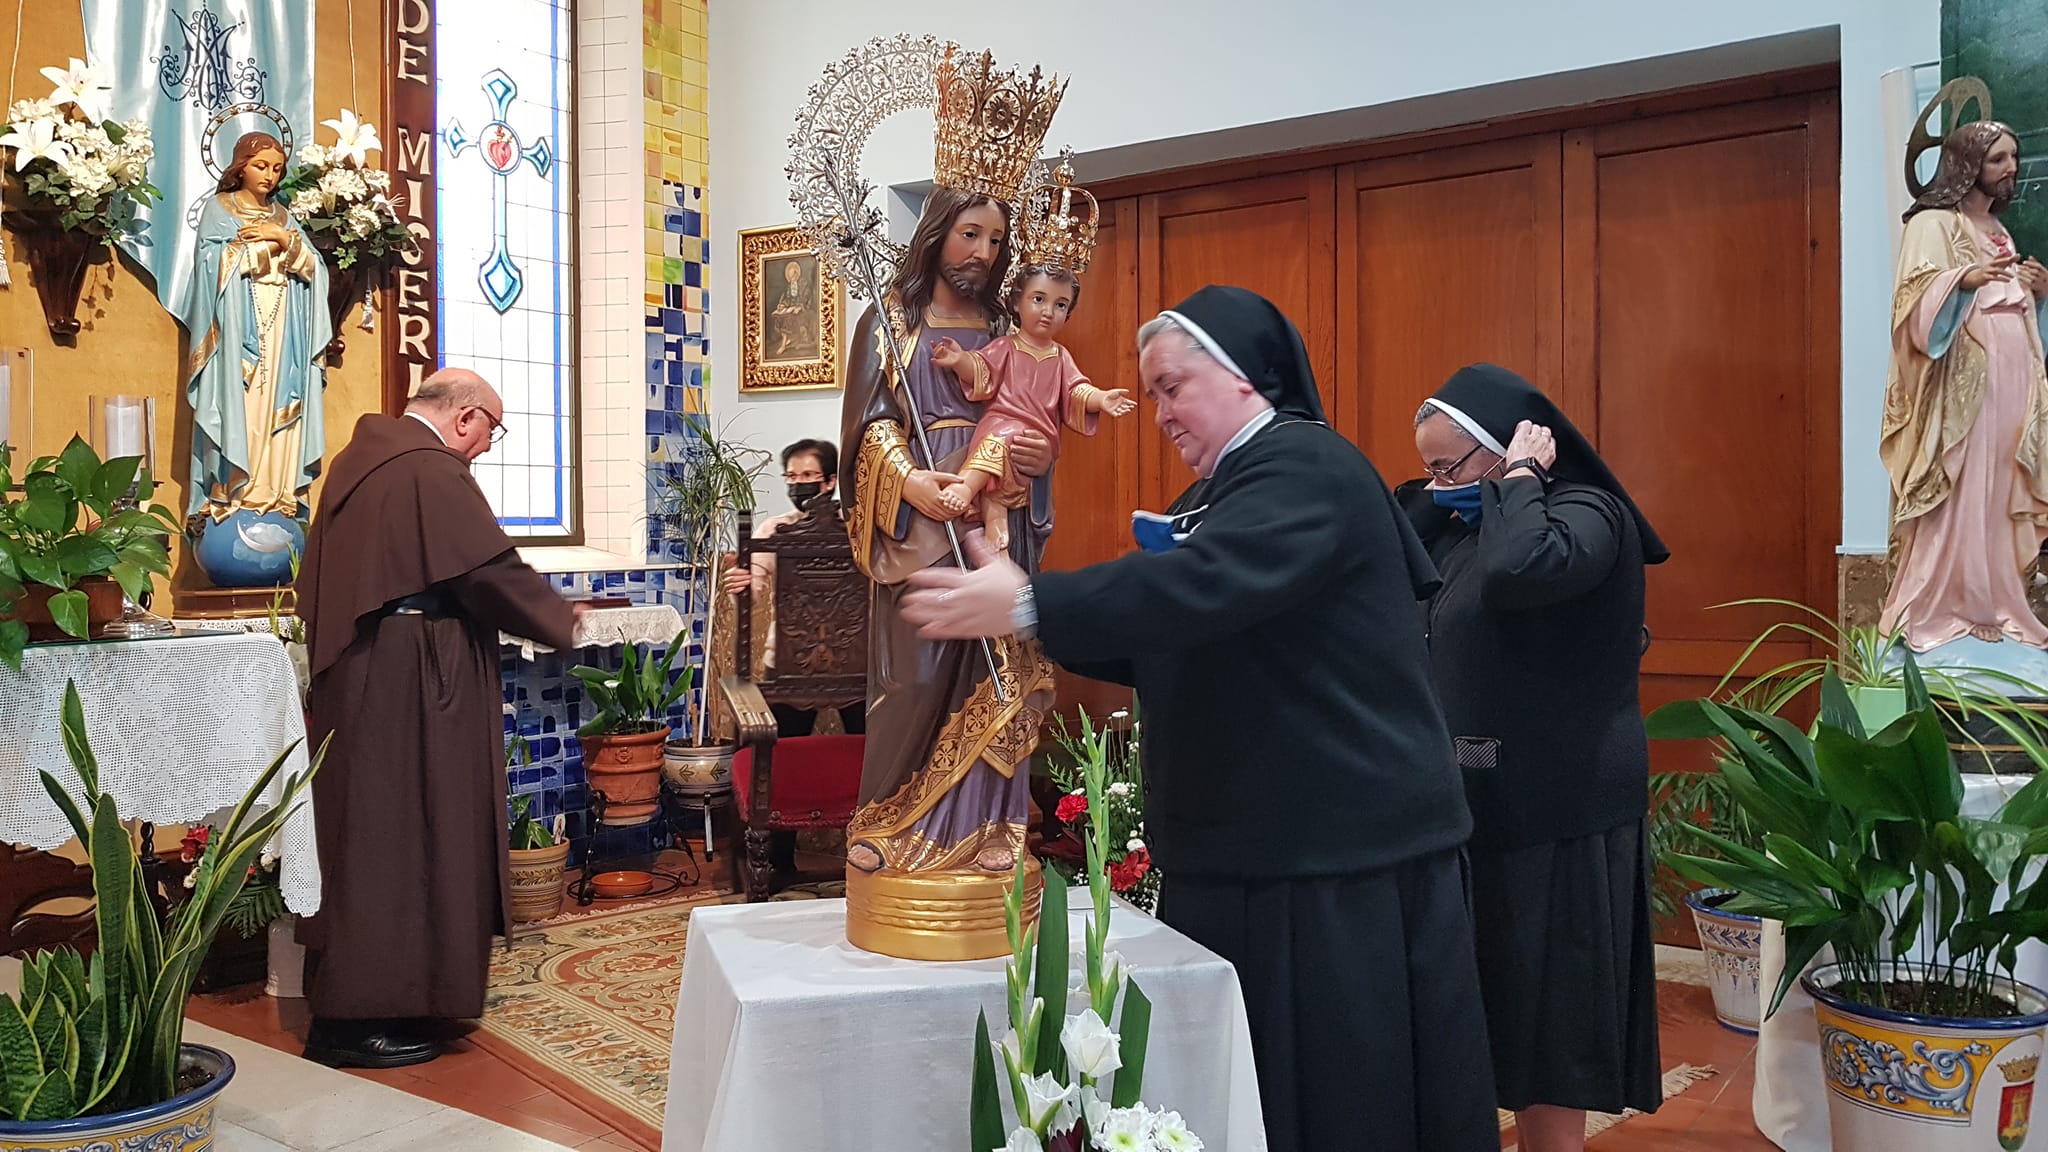 Madre Paloma y Madre Aurora preparan al imagen de San José para la ceremonia de bendición